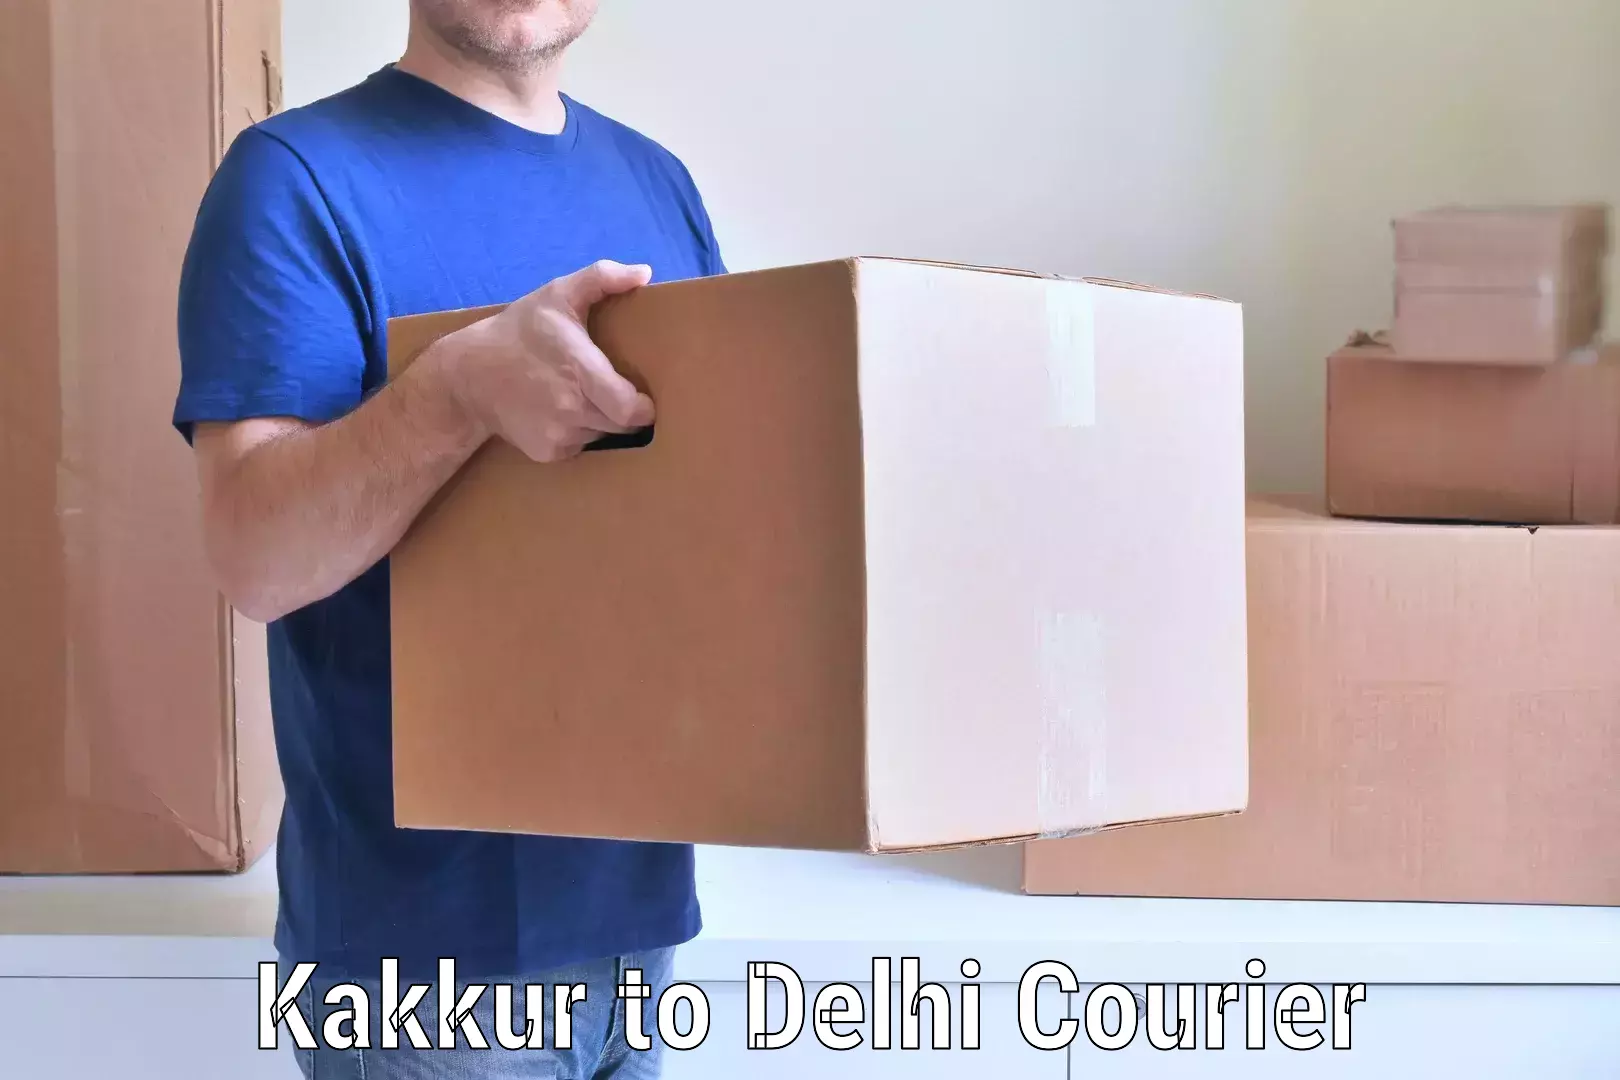 Home shifting experts Kakkur to Delhi